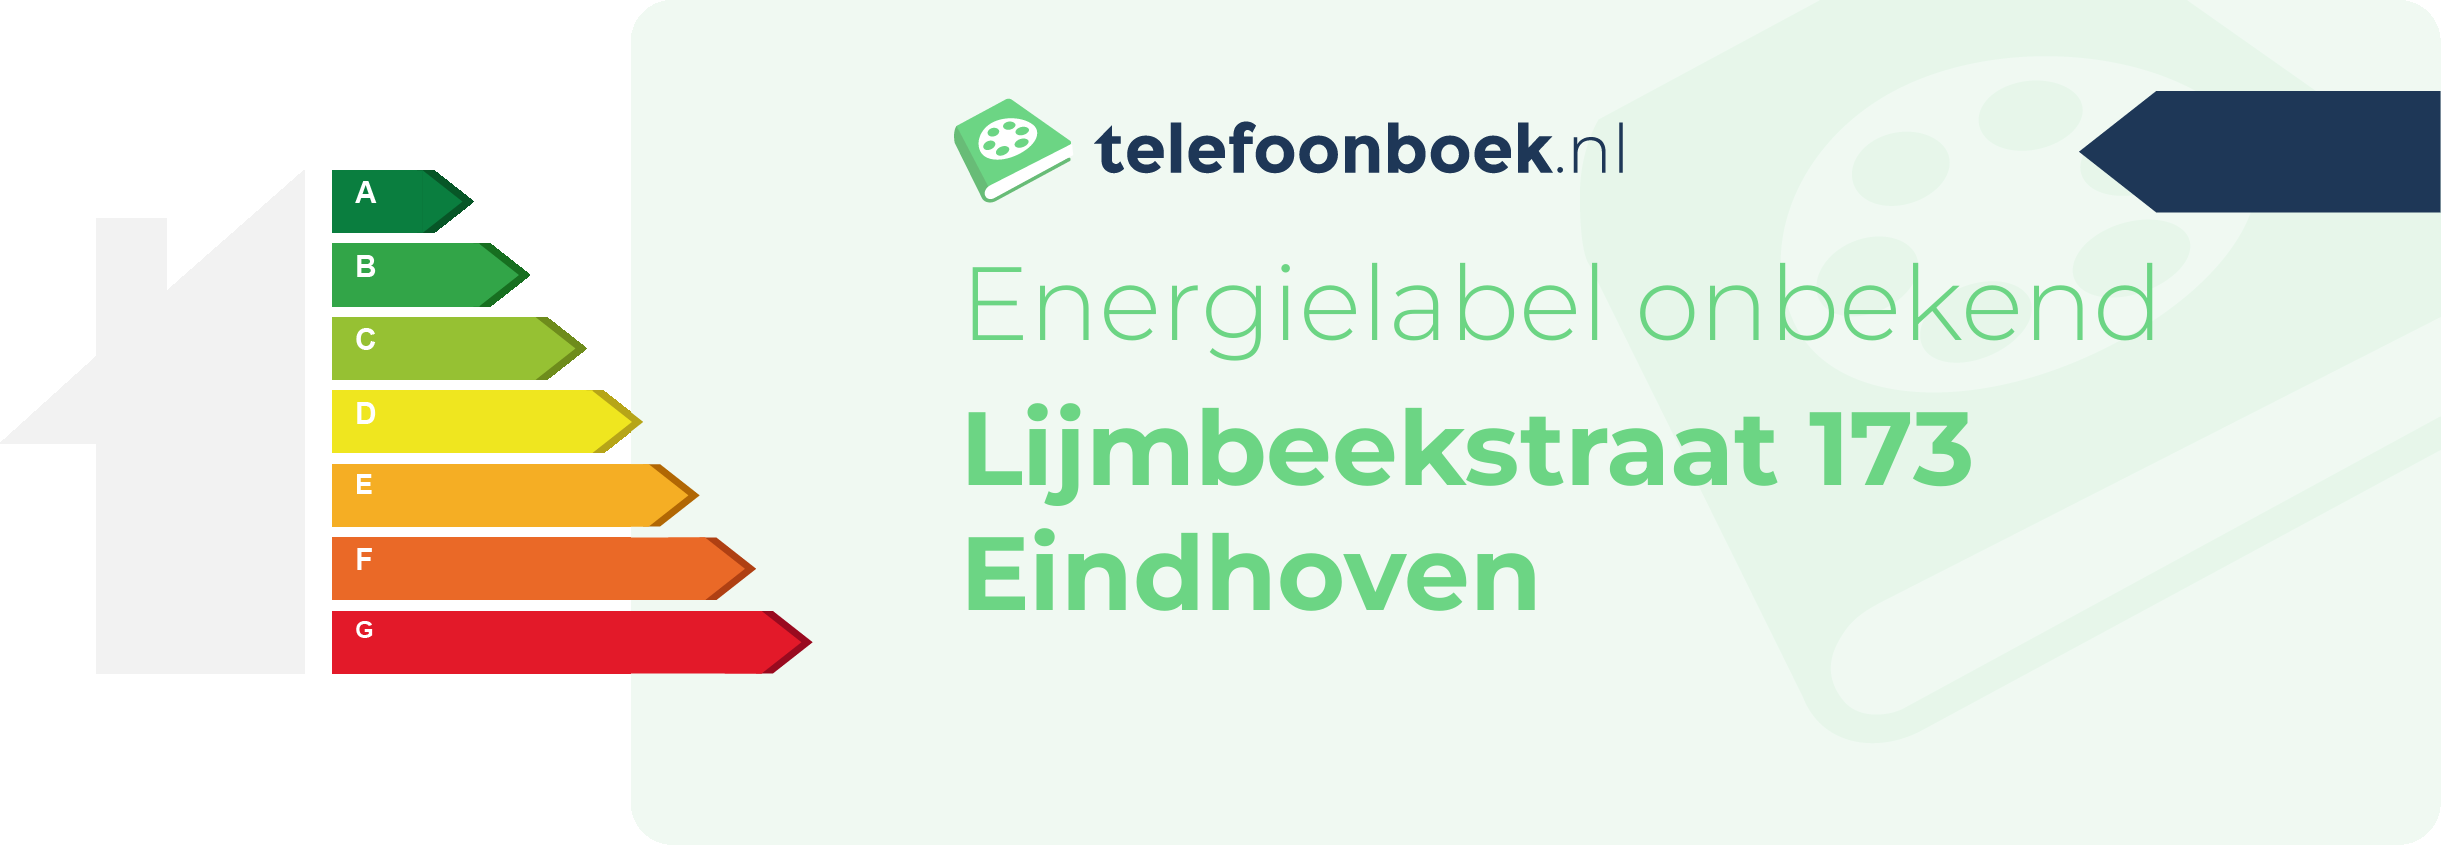 Energielabel Lijmbeekstraat 173 Eindhoven